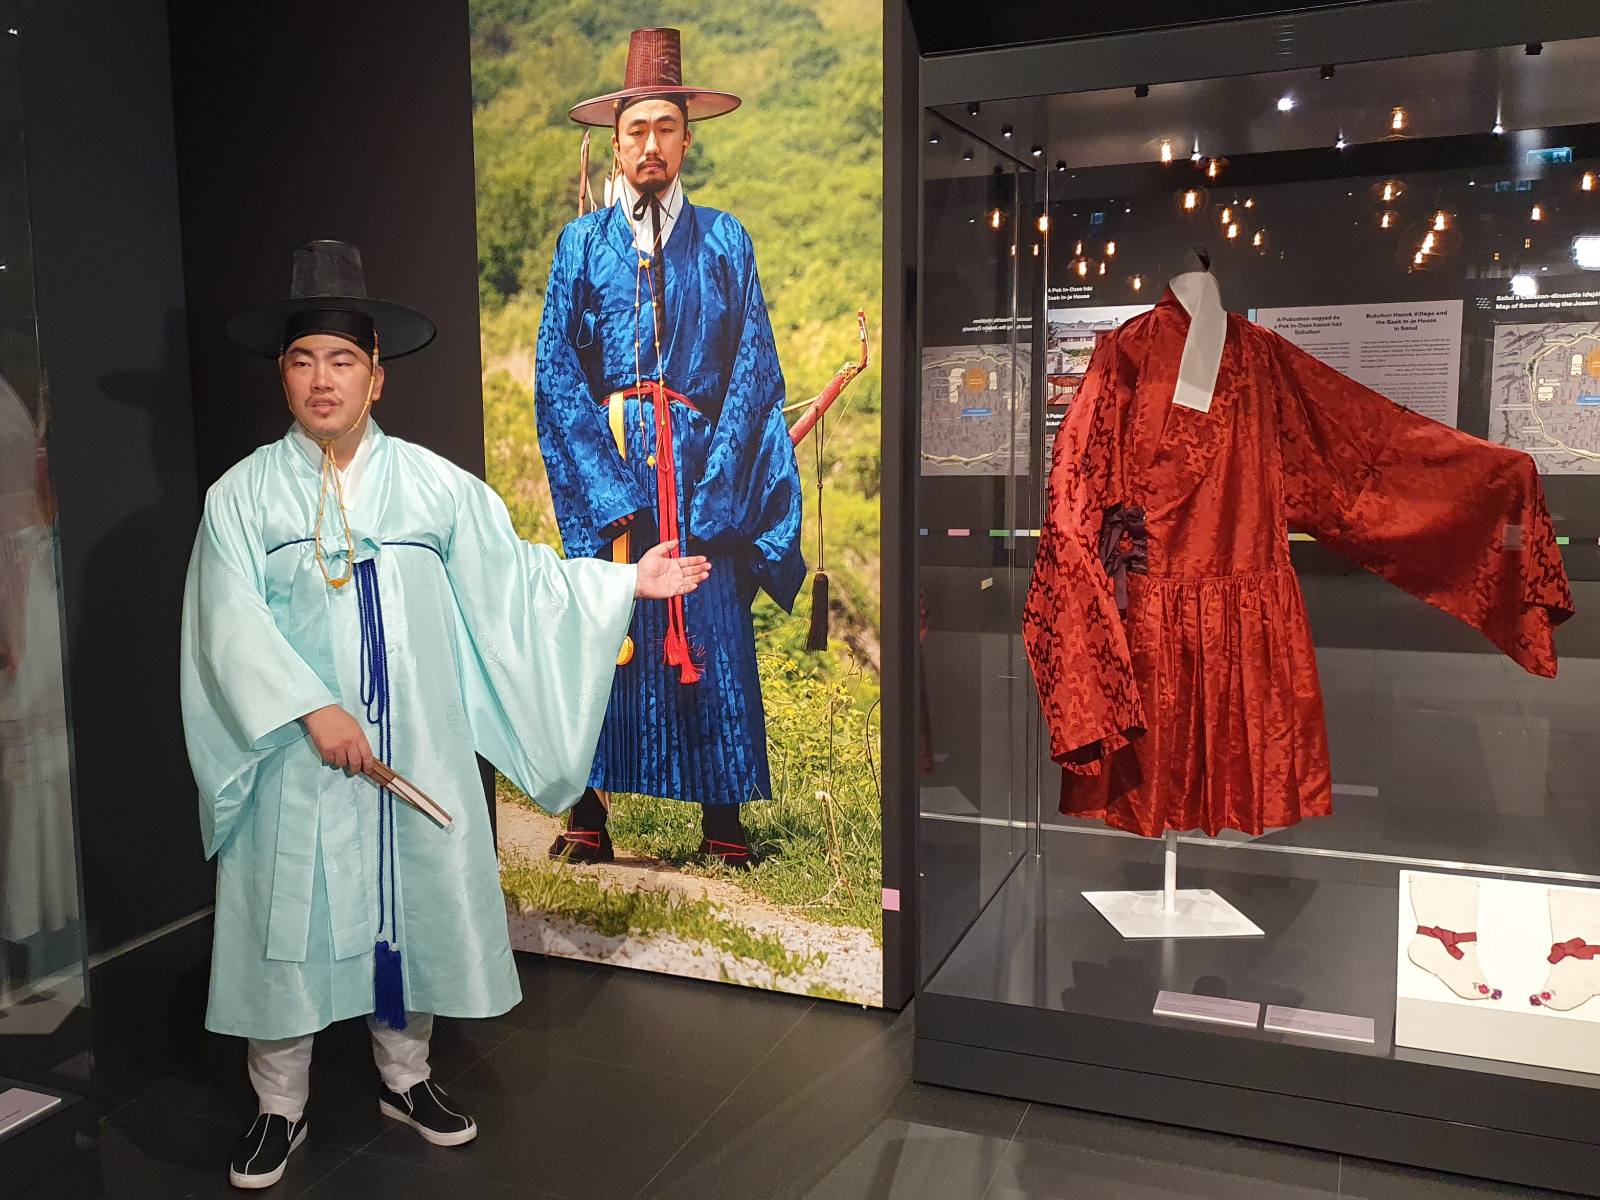 Így különítették el a nőket és a férfiakat még a lakásokban is a régi Koreában – Szöul 500 éve a Néprajzi Múzeum új tárlatán